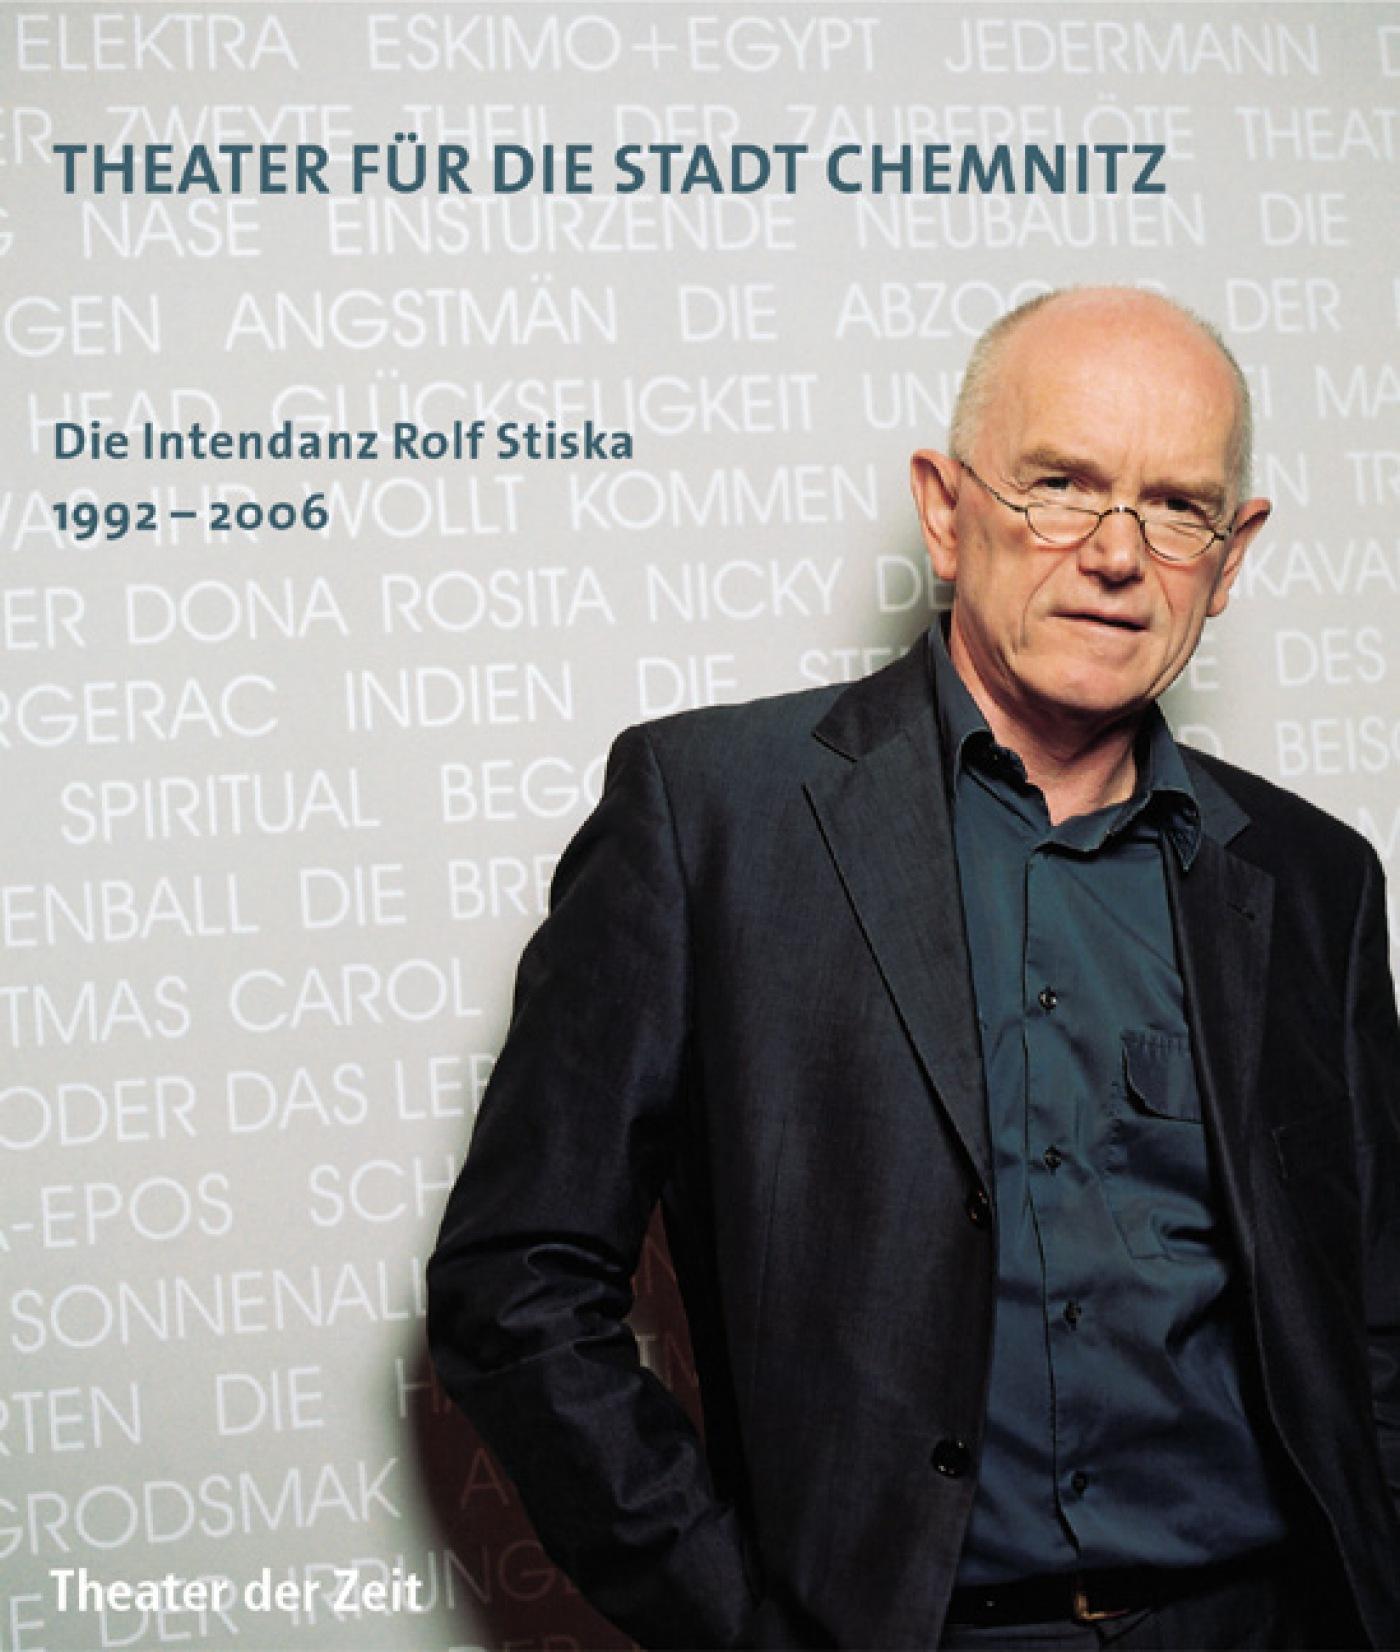 "Theater für die Stadt Chemnitz"